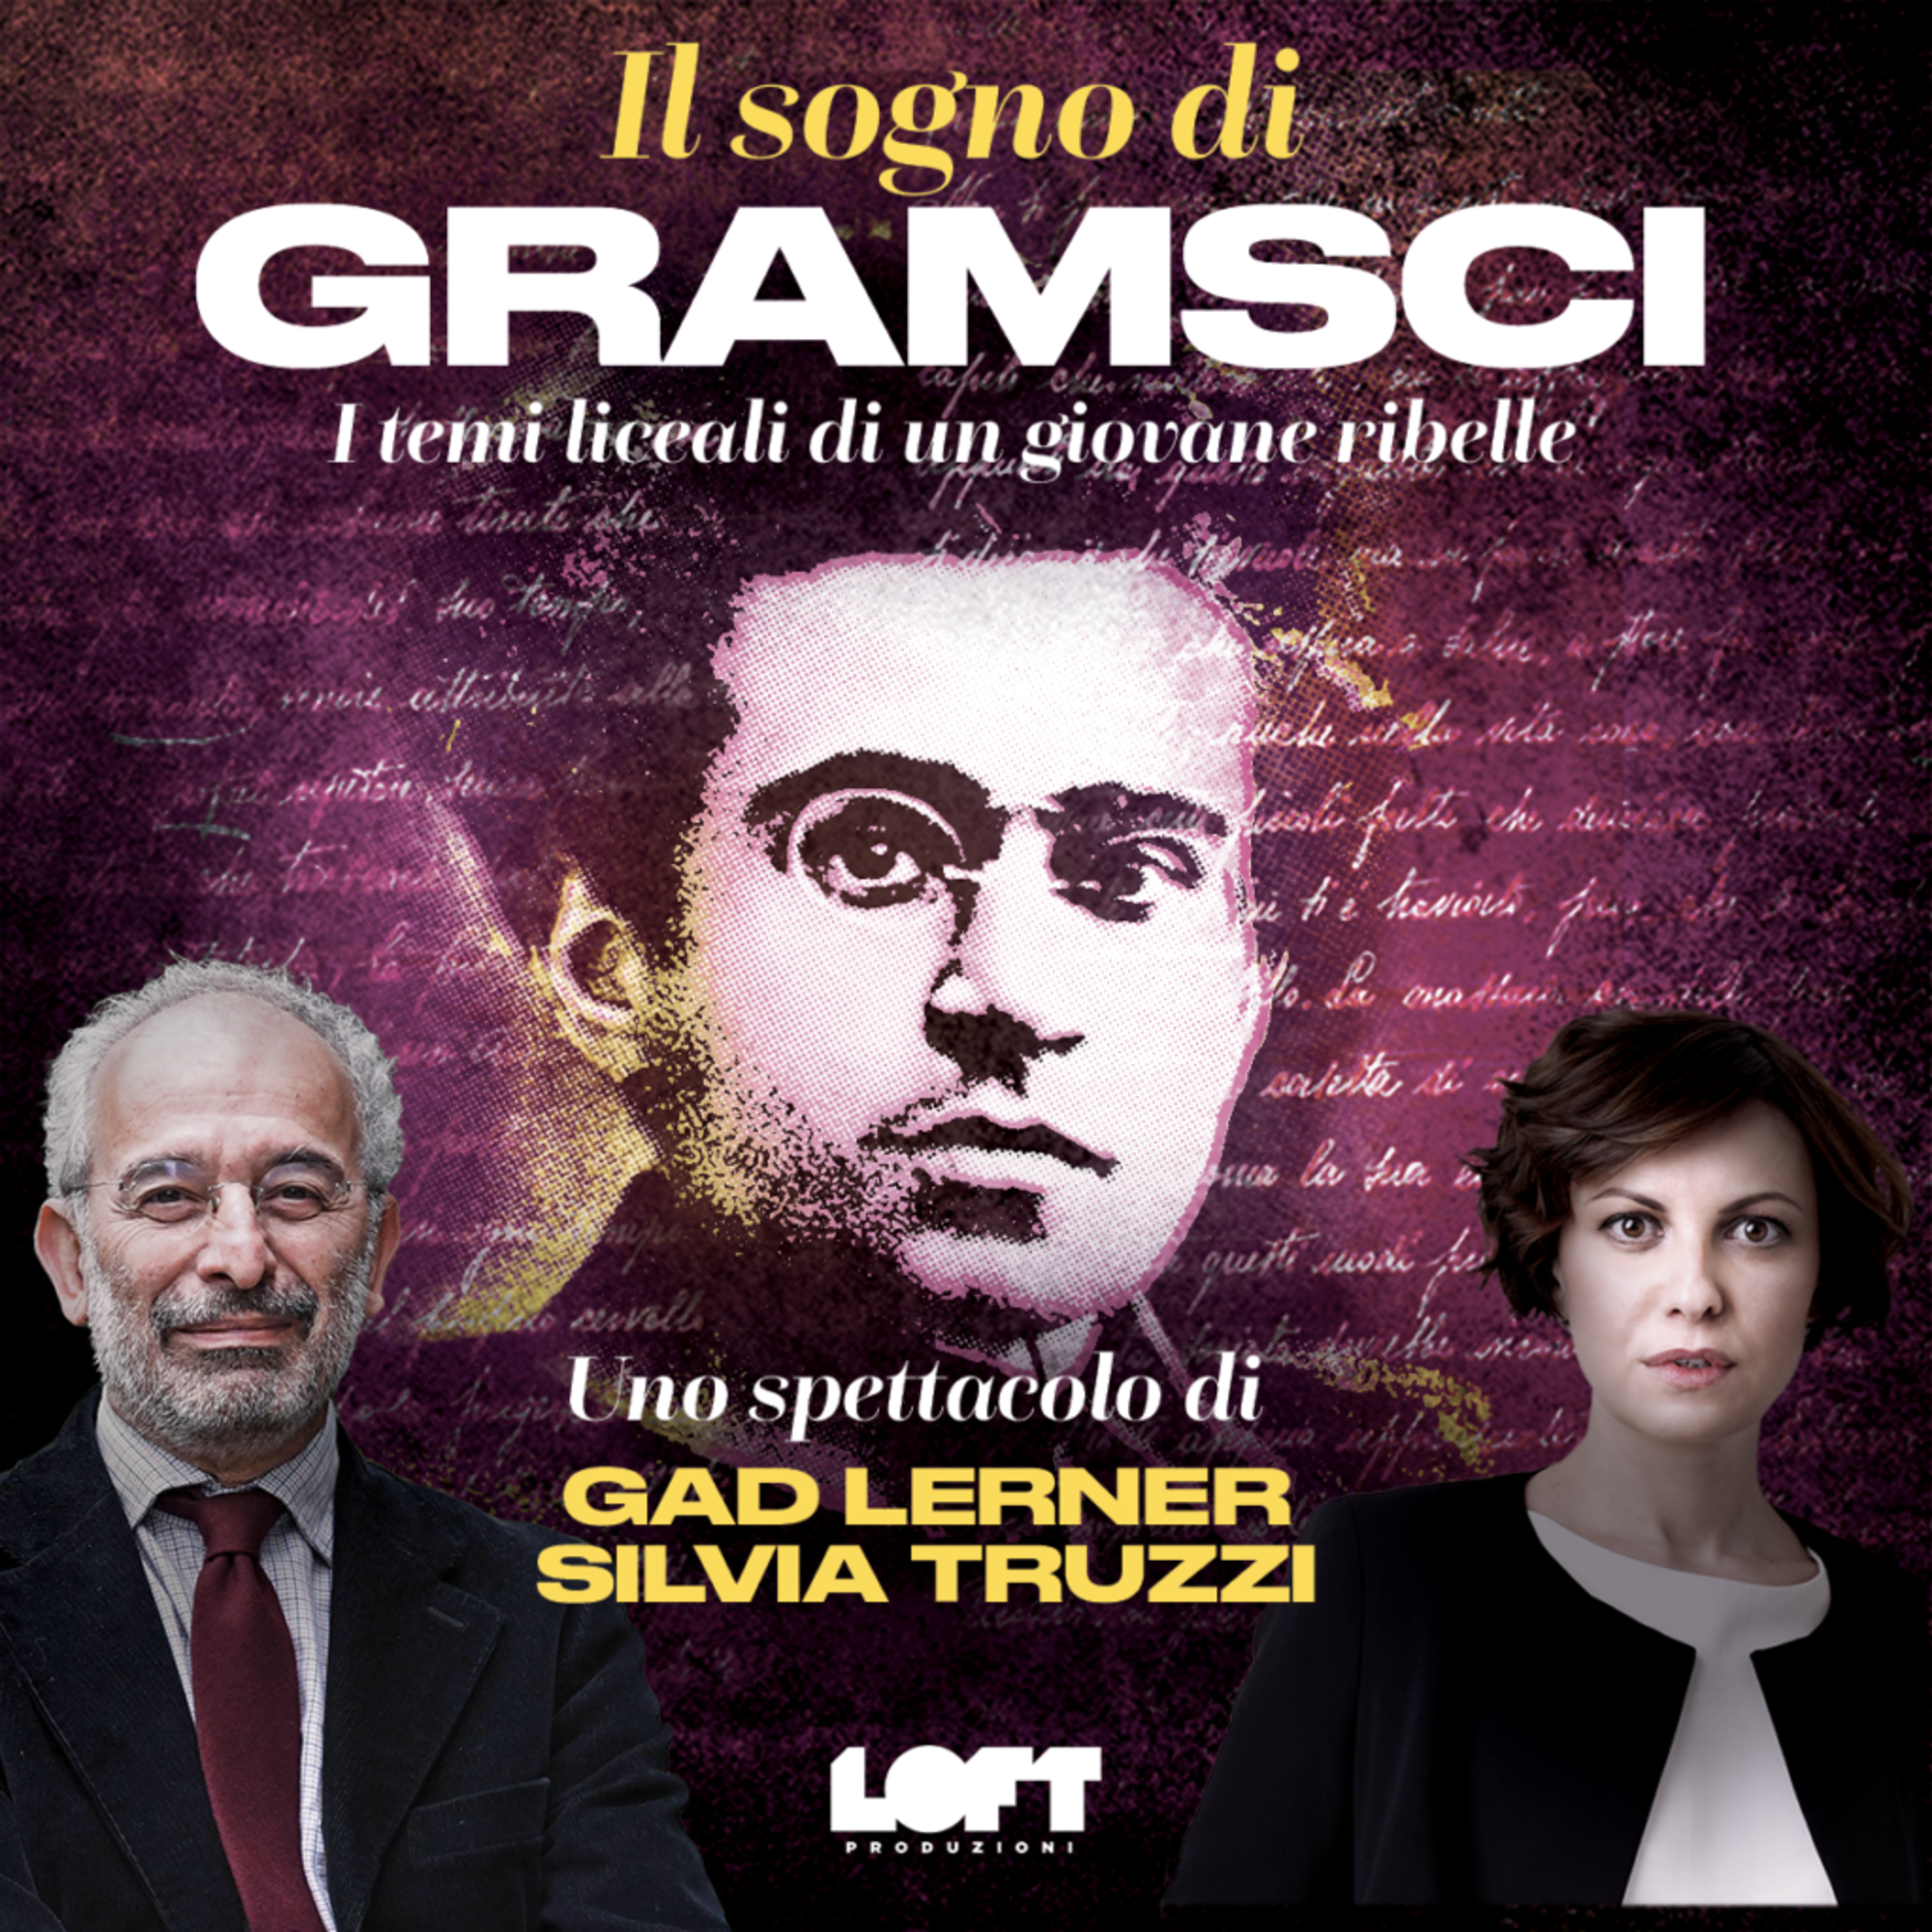 Il sogno di Gramsci, con Gad Lerner e Silvia Truzzi